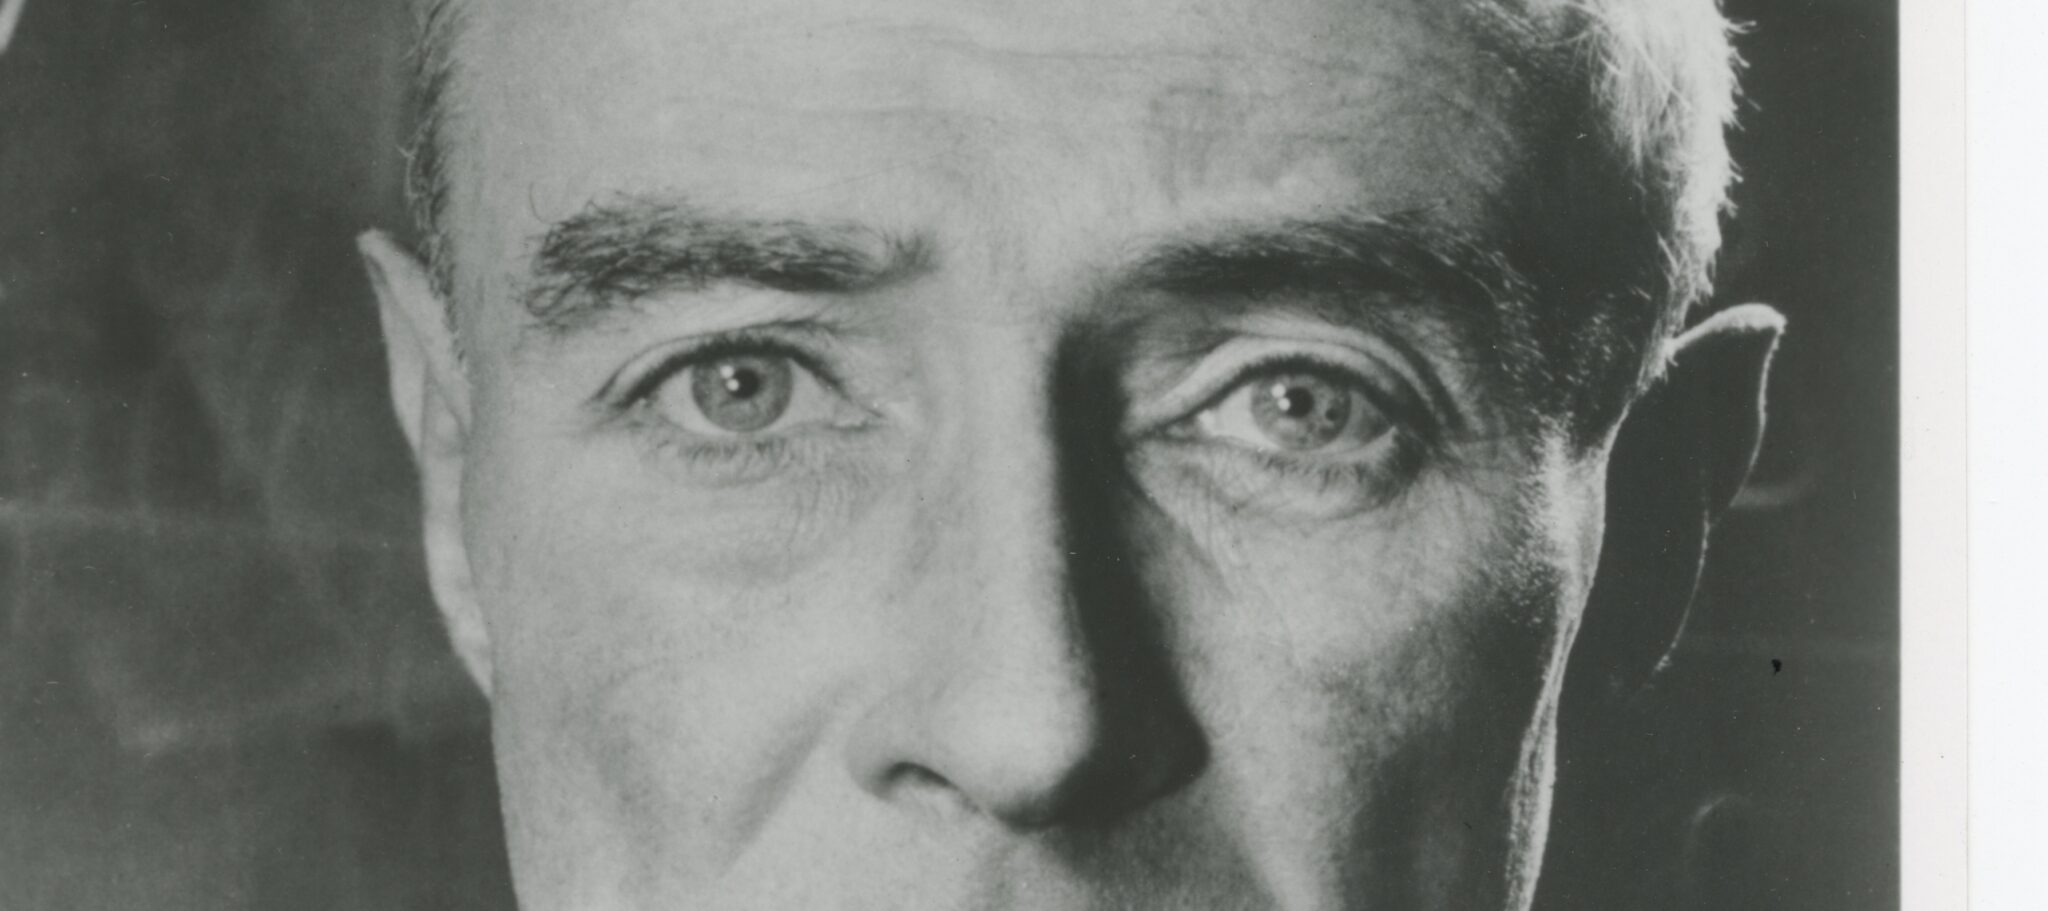 Oppenheimer's eyes